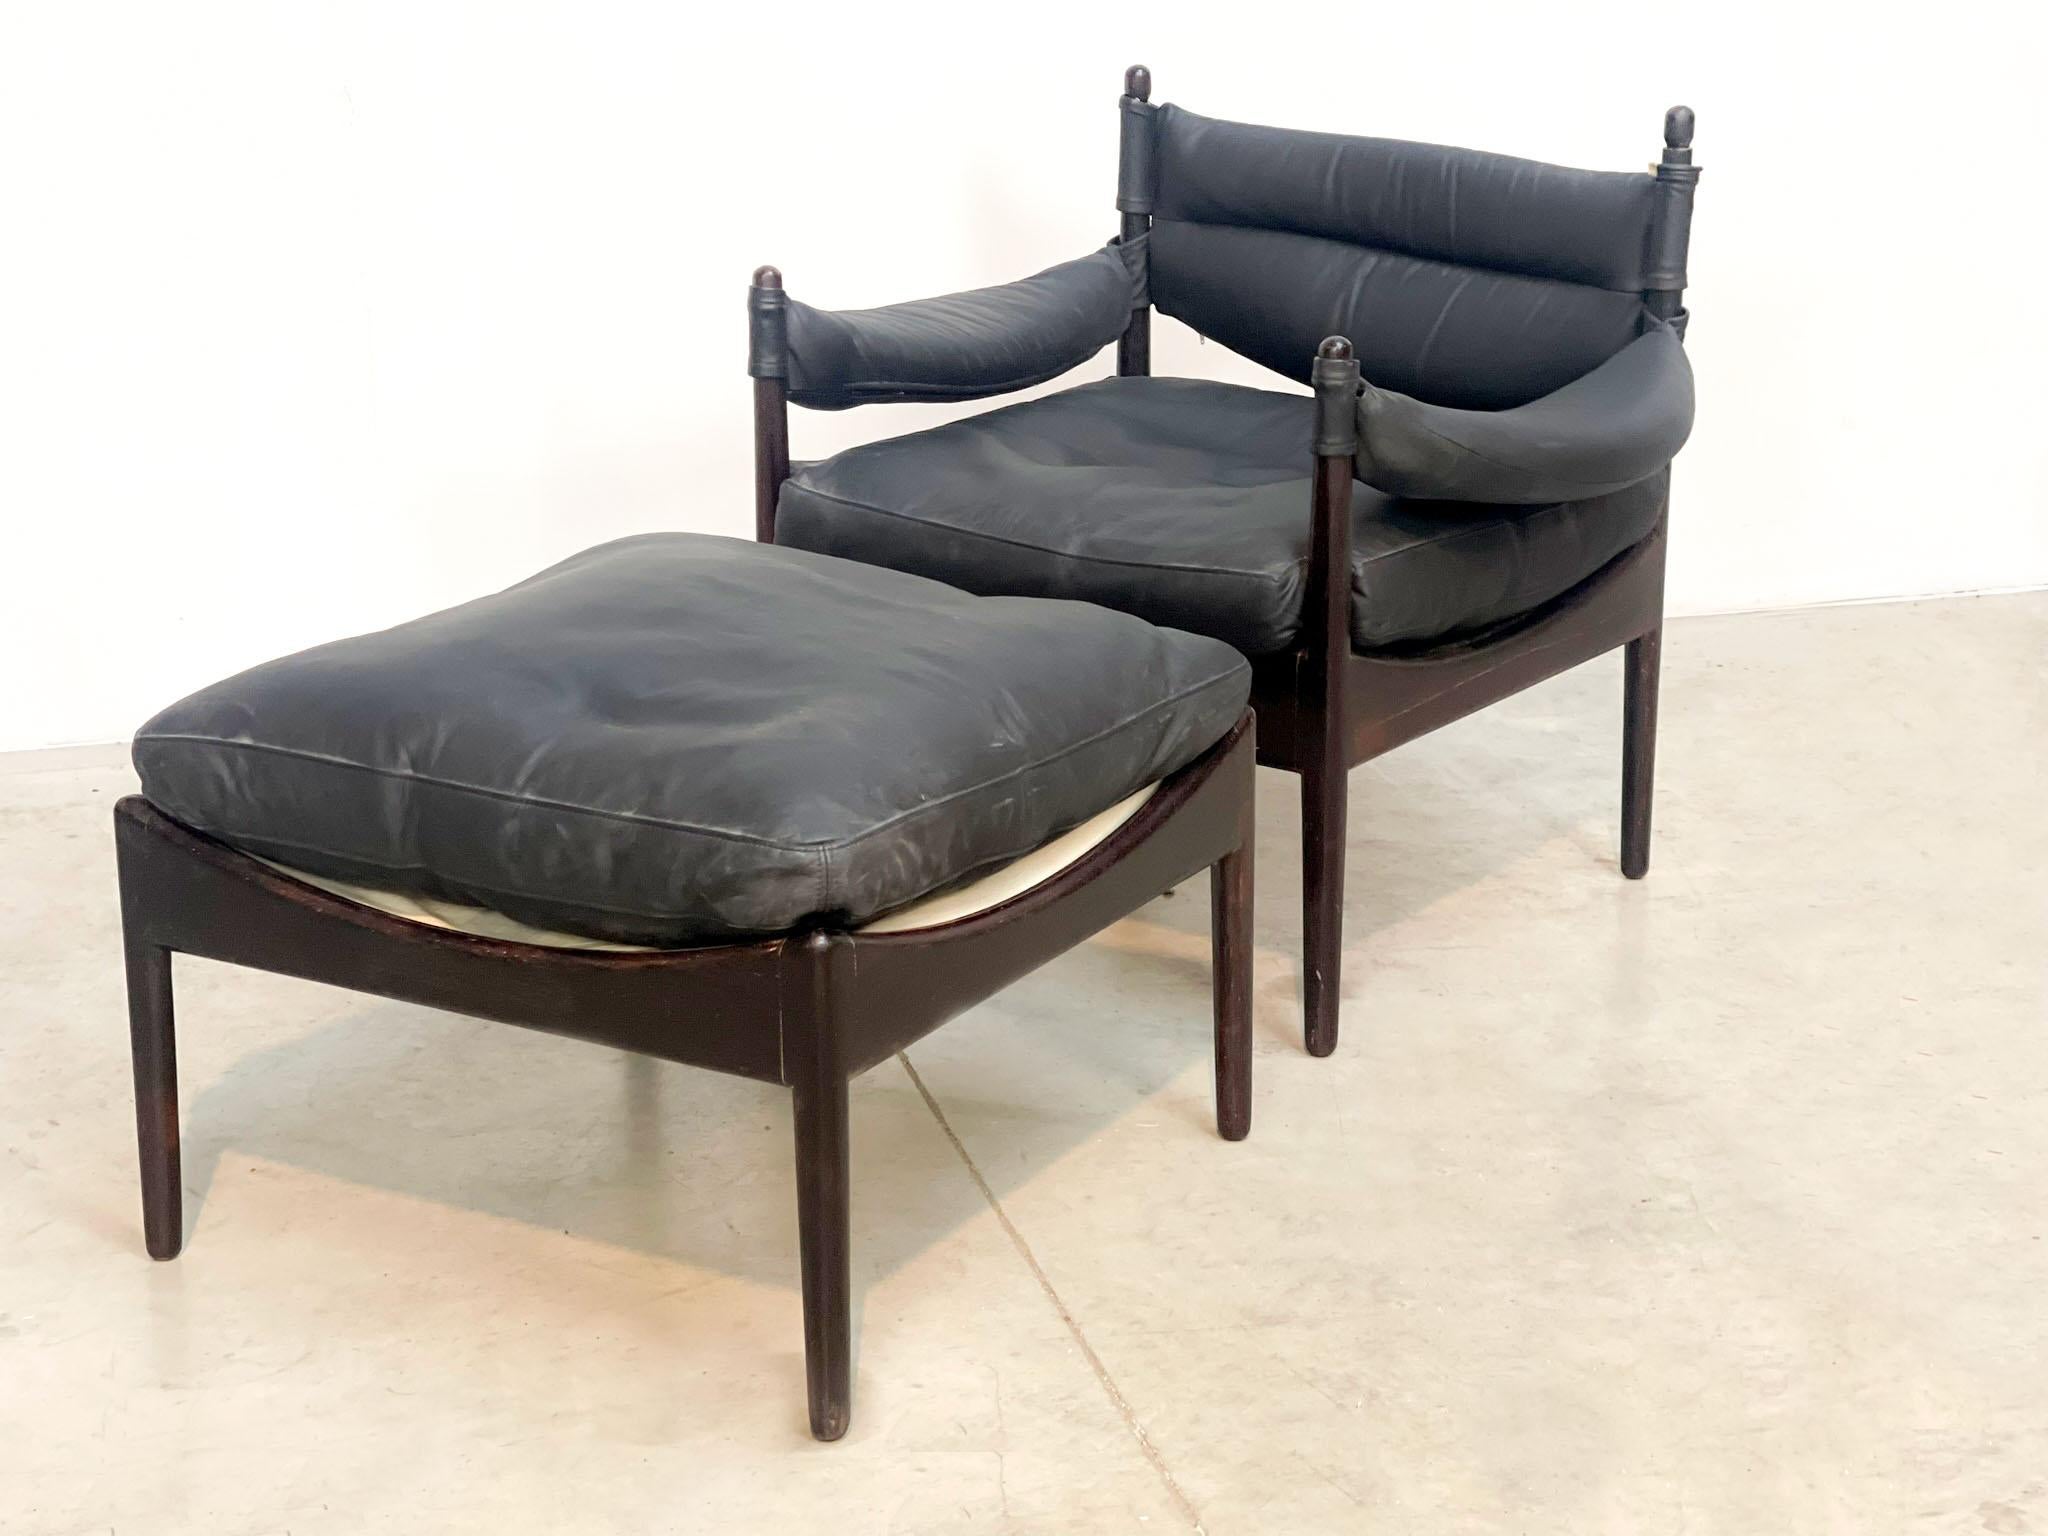 Joli fauteuil de salon danois du designer danois Kristian Vedel. Kristian Vedel a conçu cette chaise dans les années 1960 pour la collection 